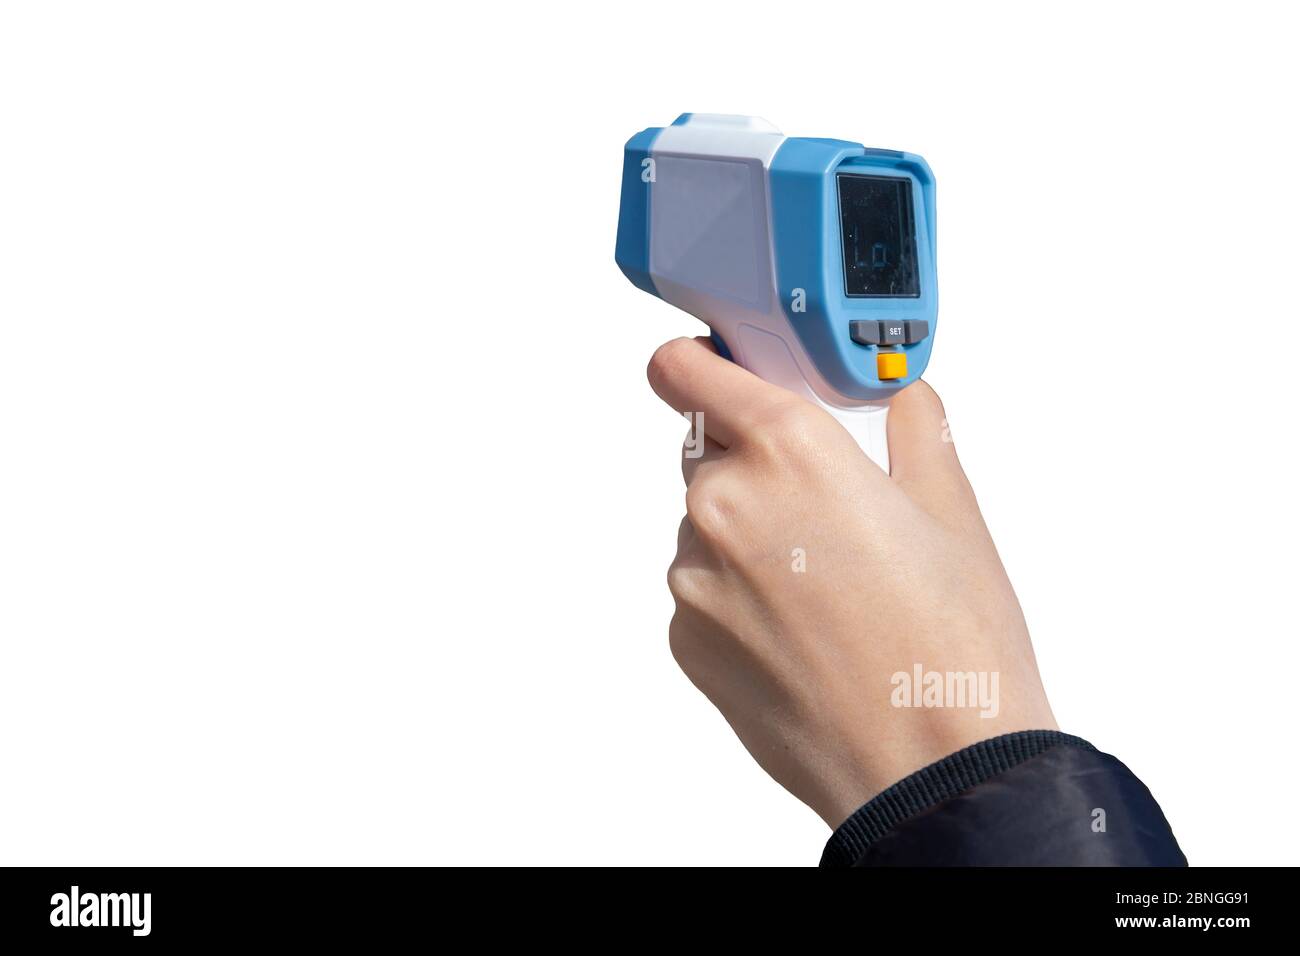 Thermomètre infrarouge portable pour objets thermomètre électronique pistolet  thermique laser